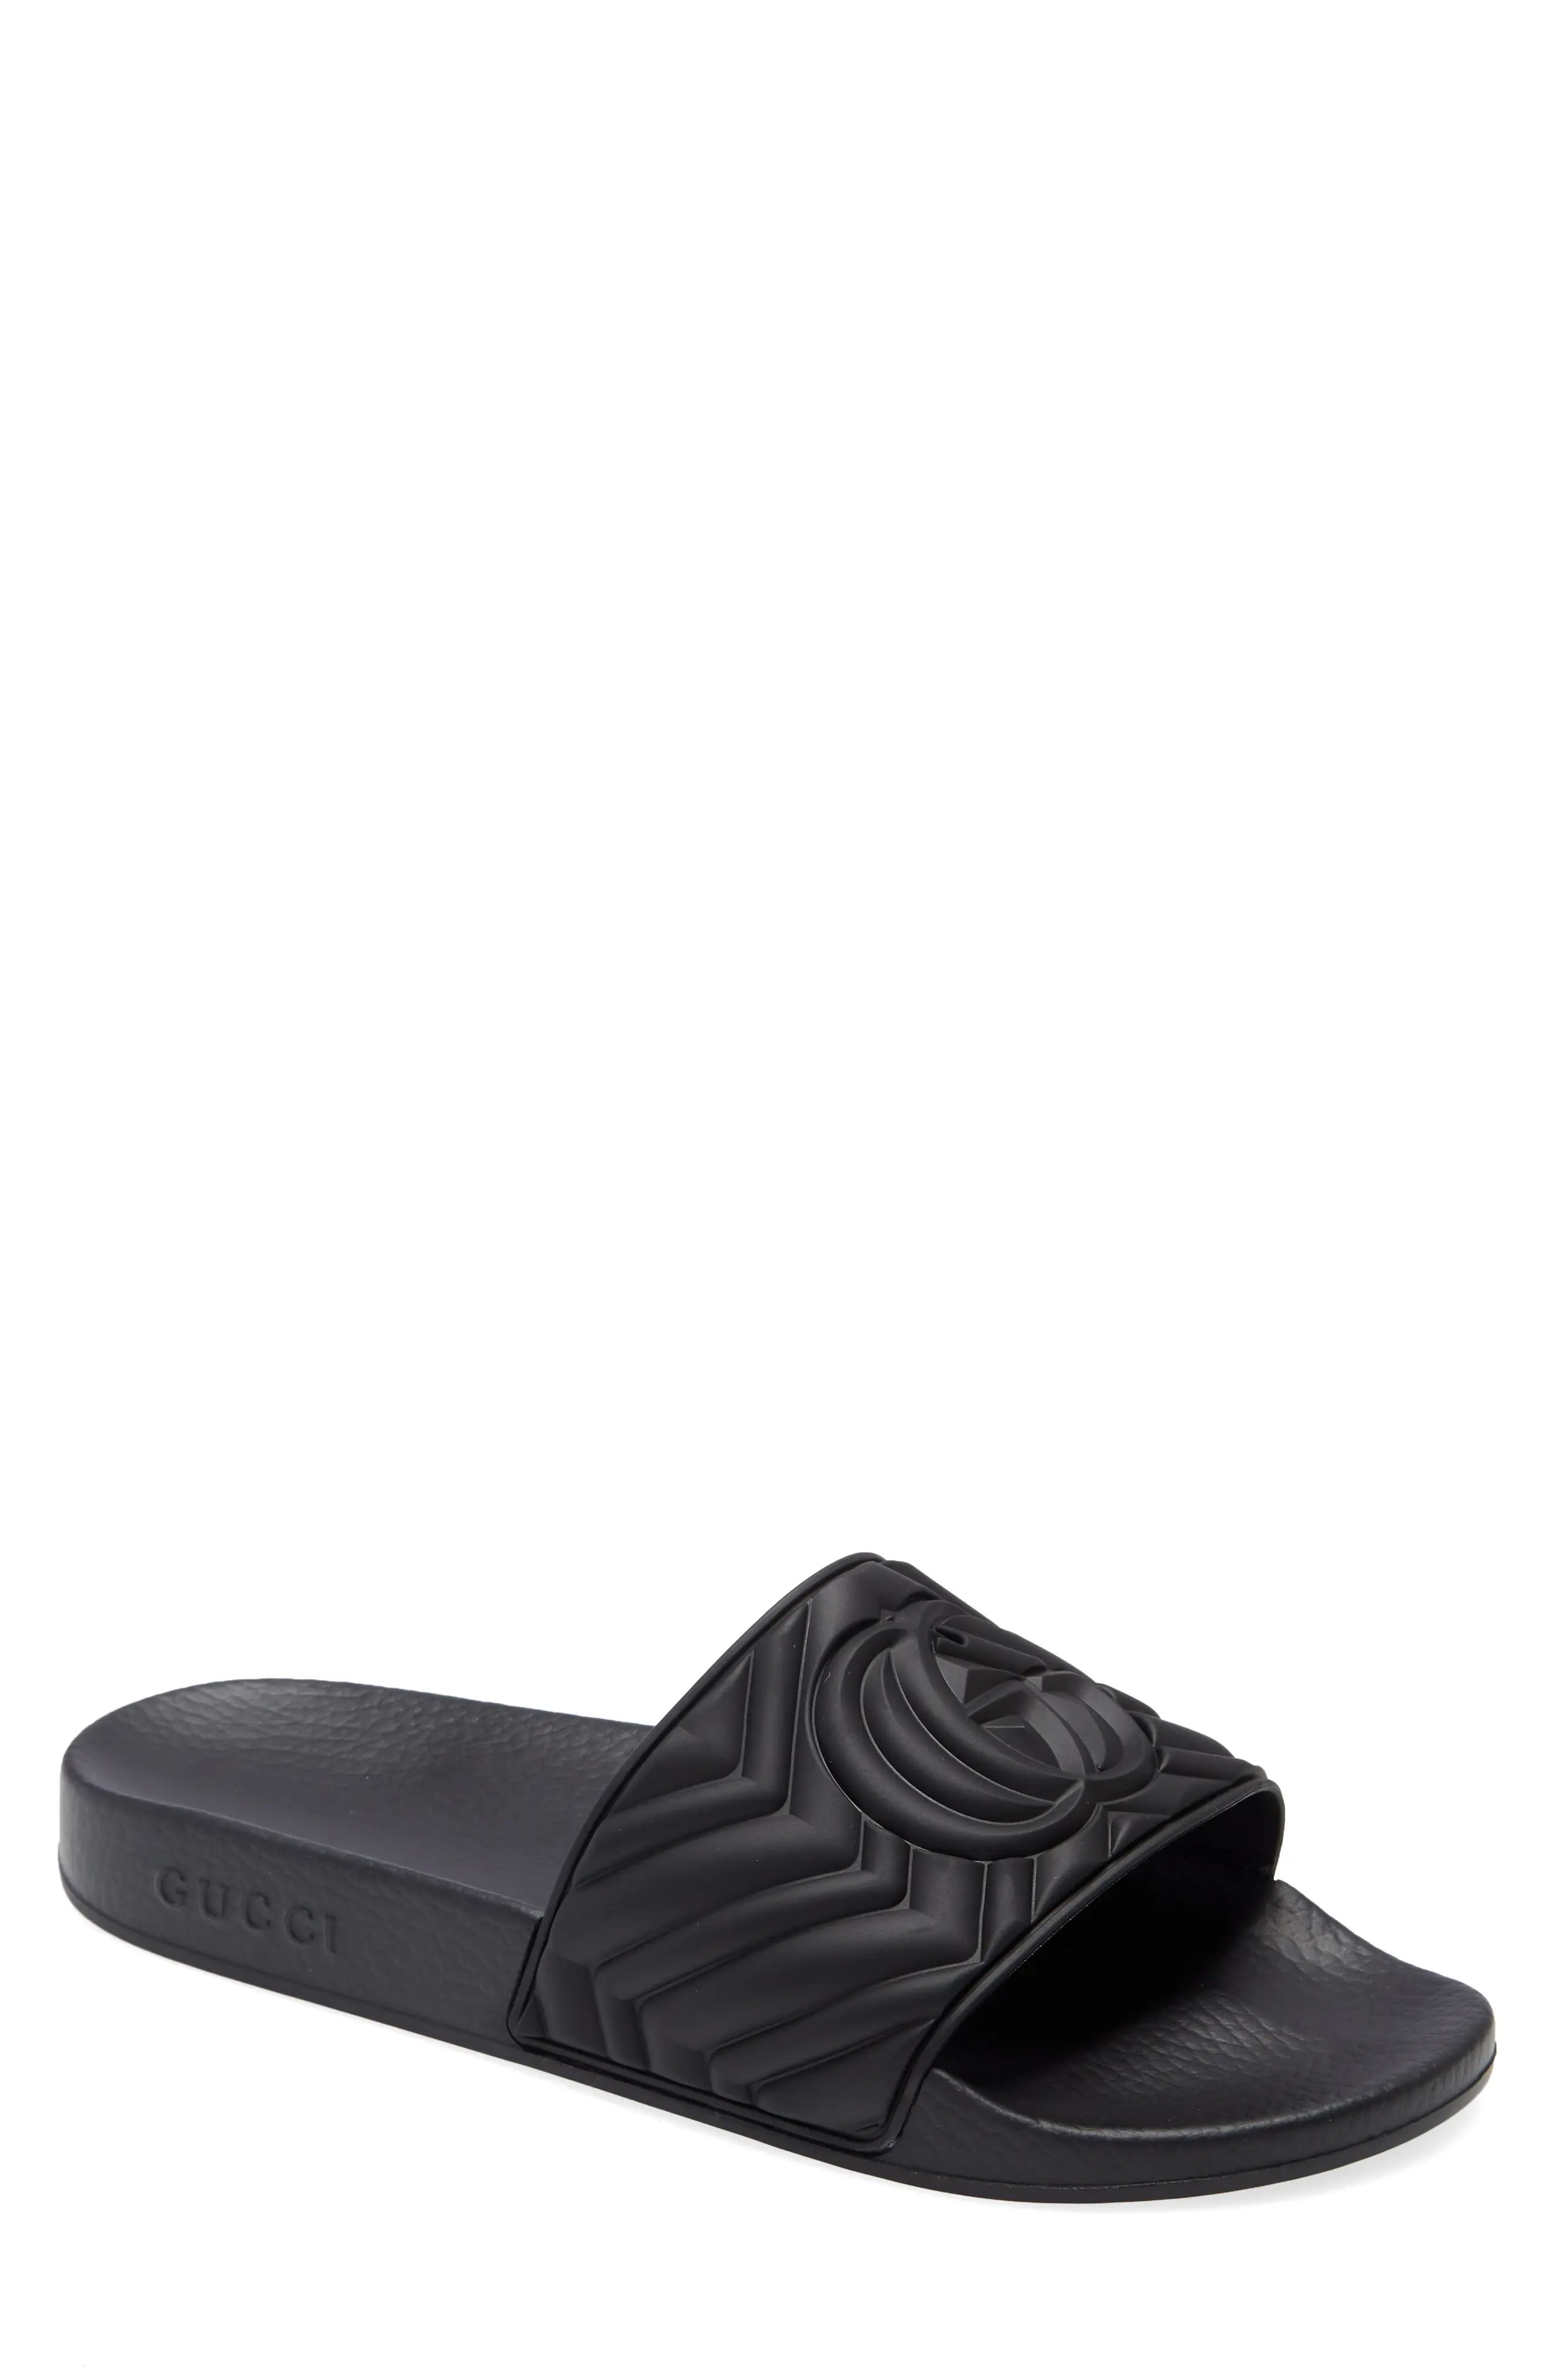 Gucci Matelasse Slide Sandal in Black at Nordstrom, Size 9Us | Nordstrom